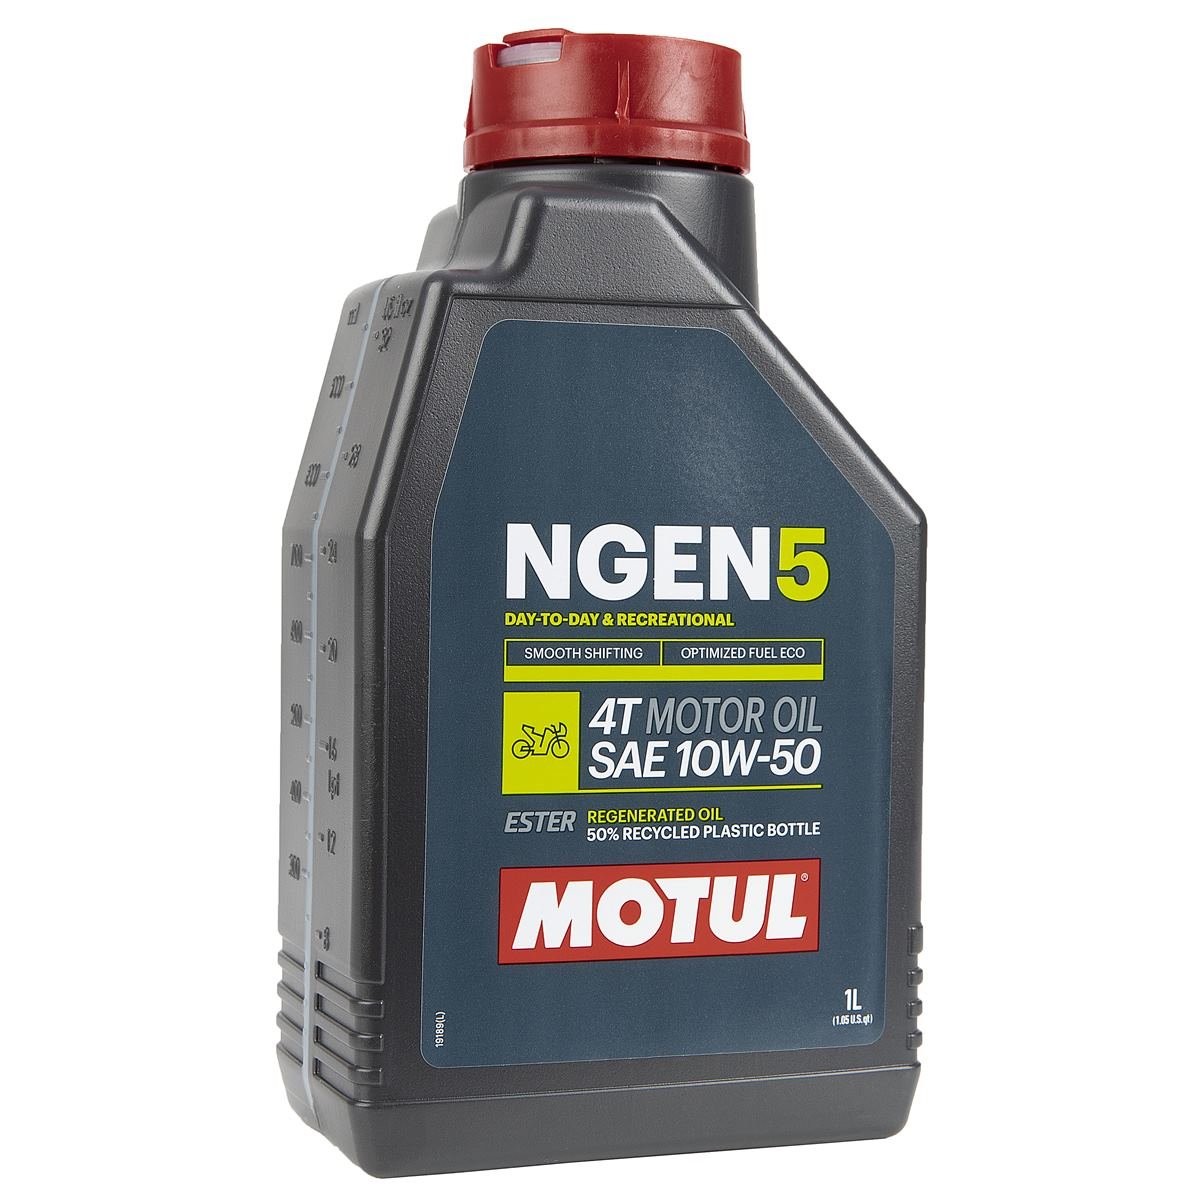 Motul Motor Oil NGEN 5 10W50, 1 Liter